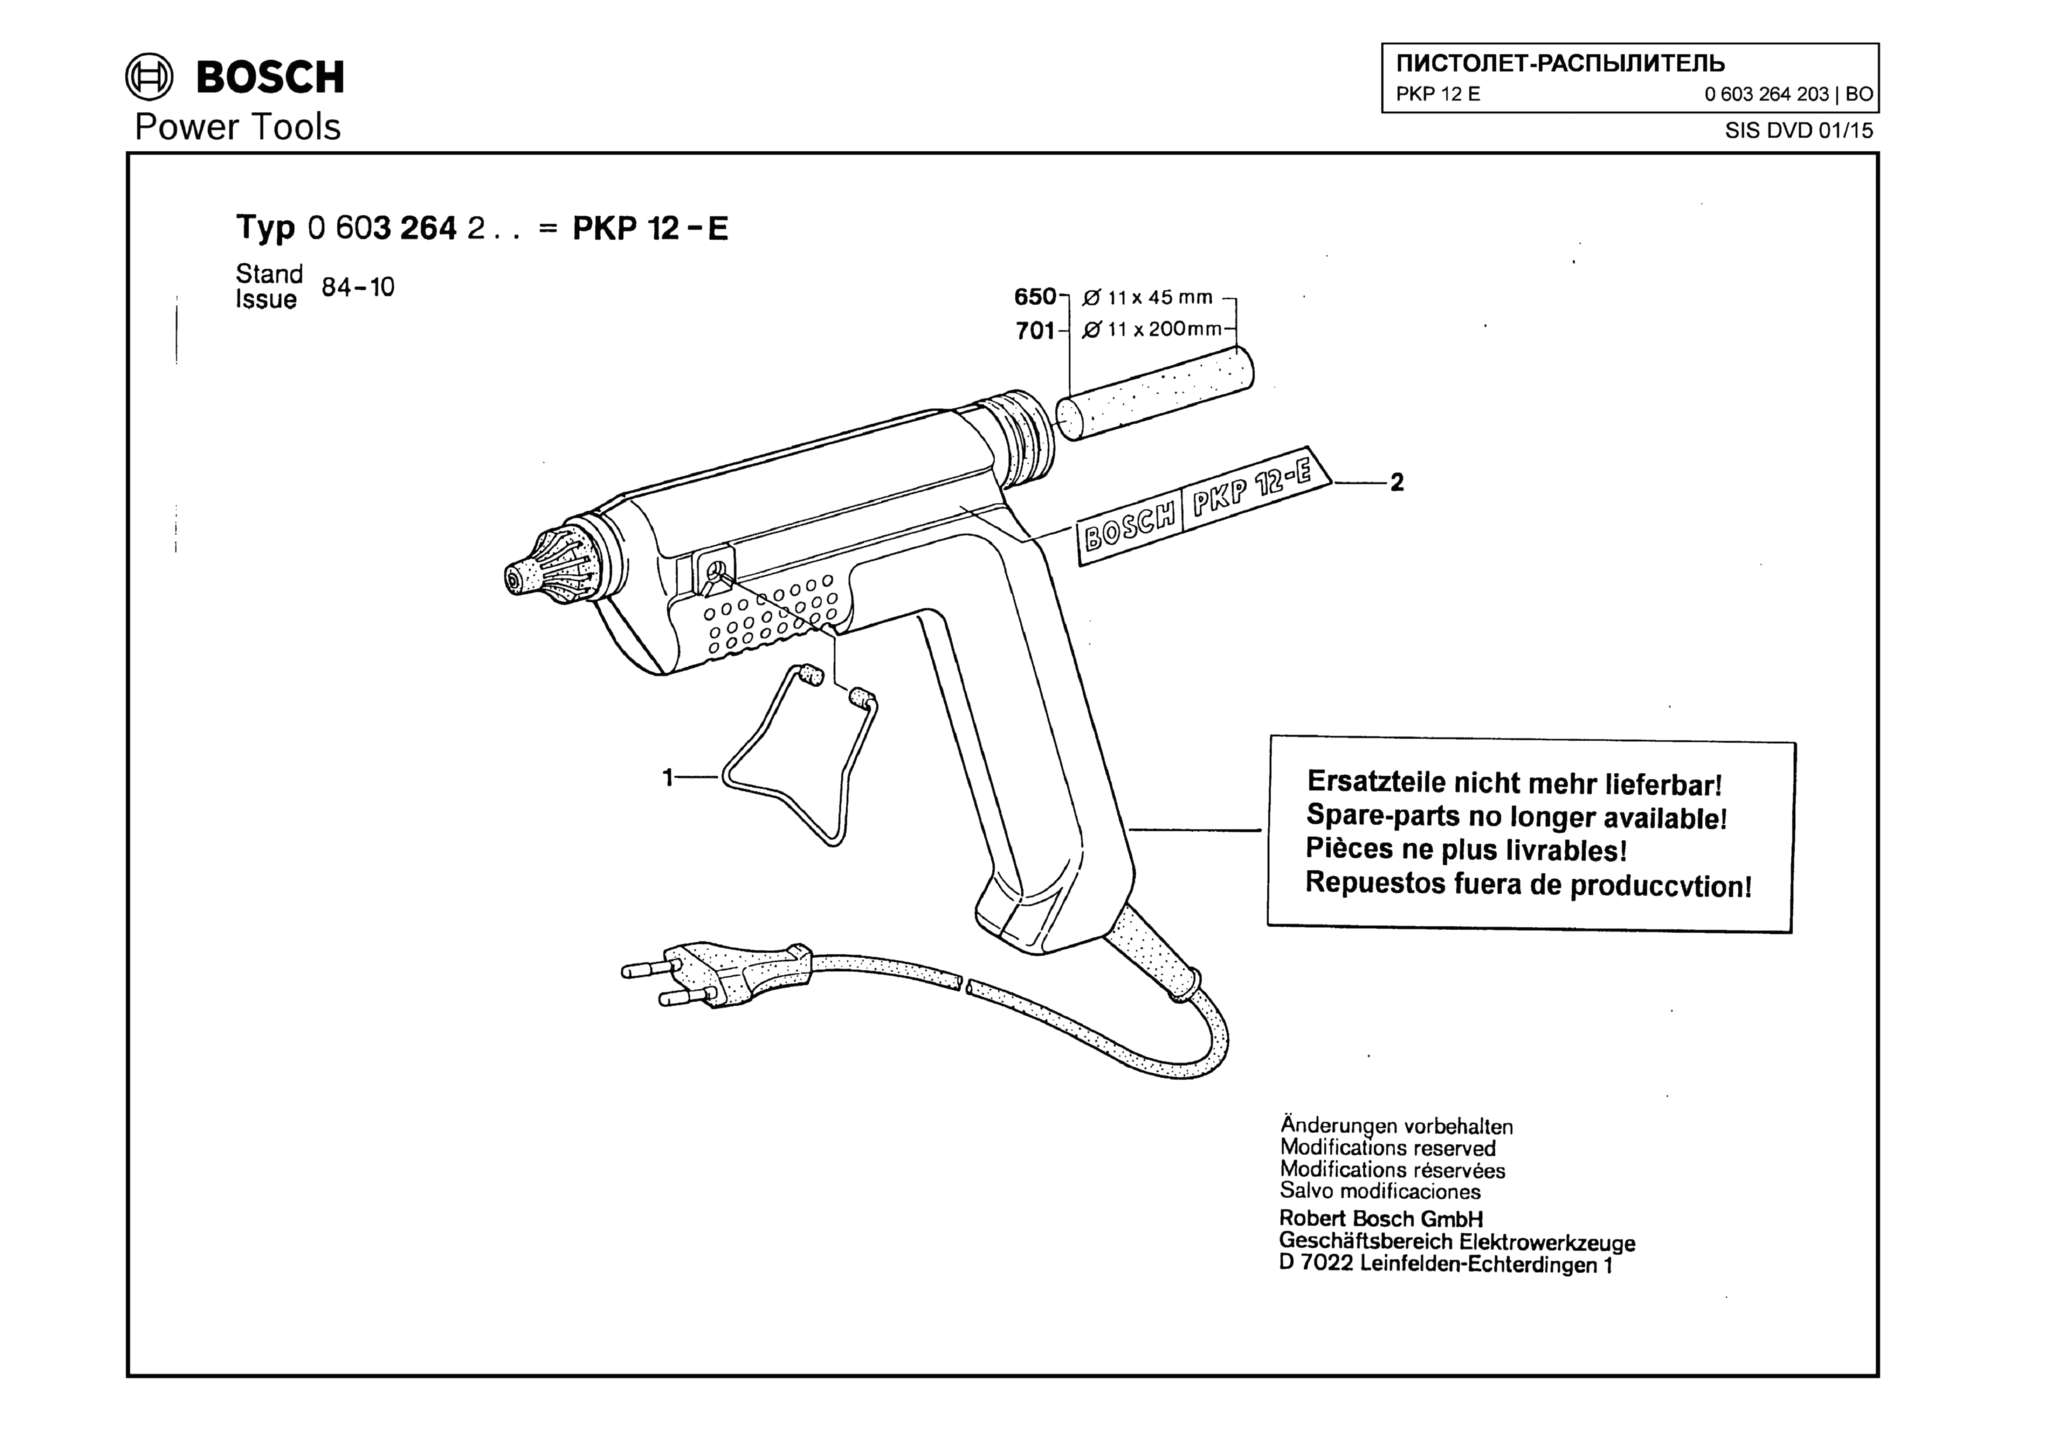 Запчасти, схема и деталировка Bosch PKP 12 E (ТИП 0603264203)